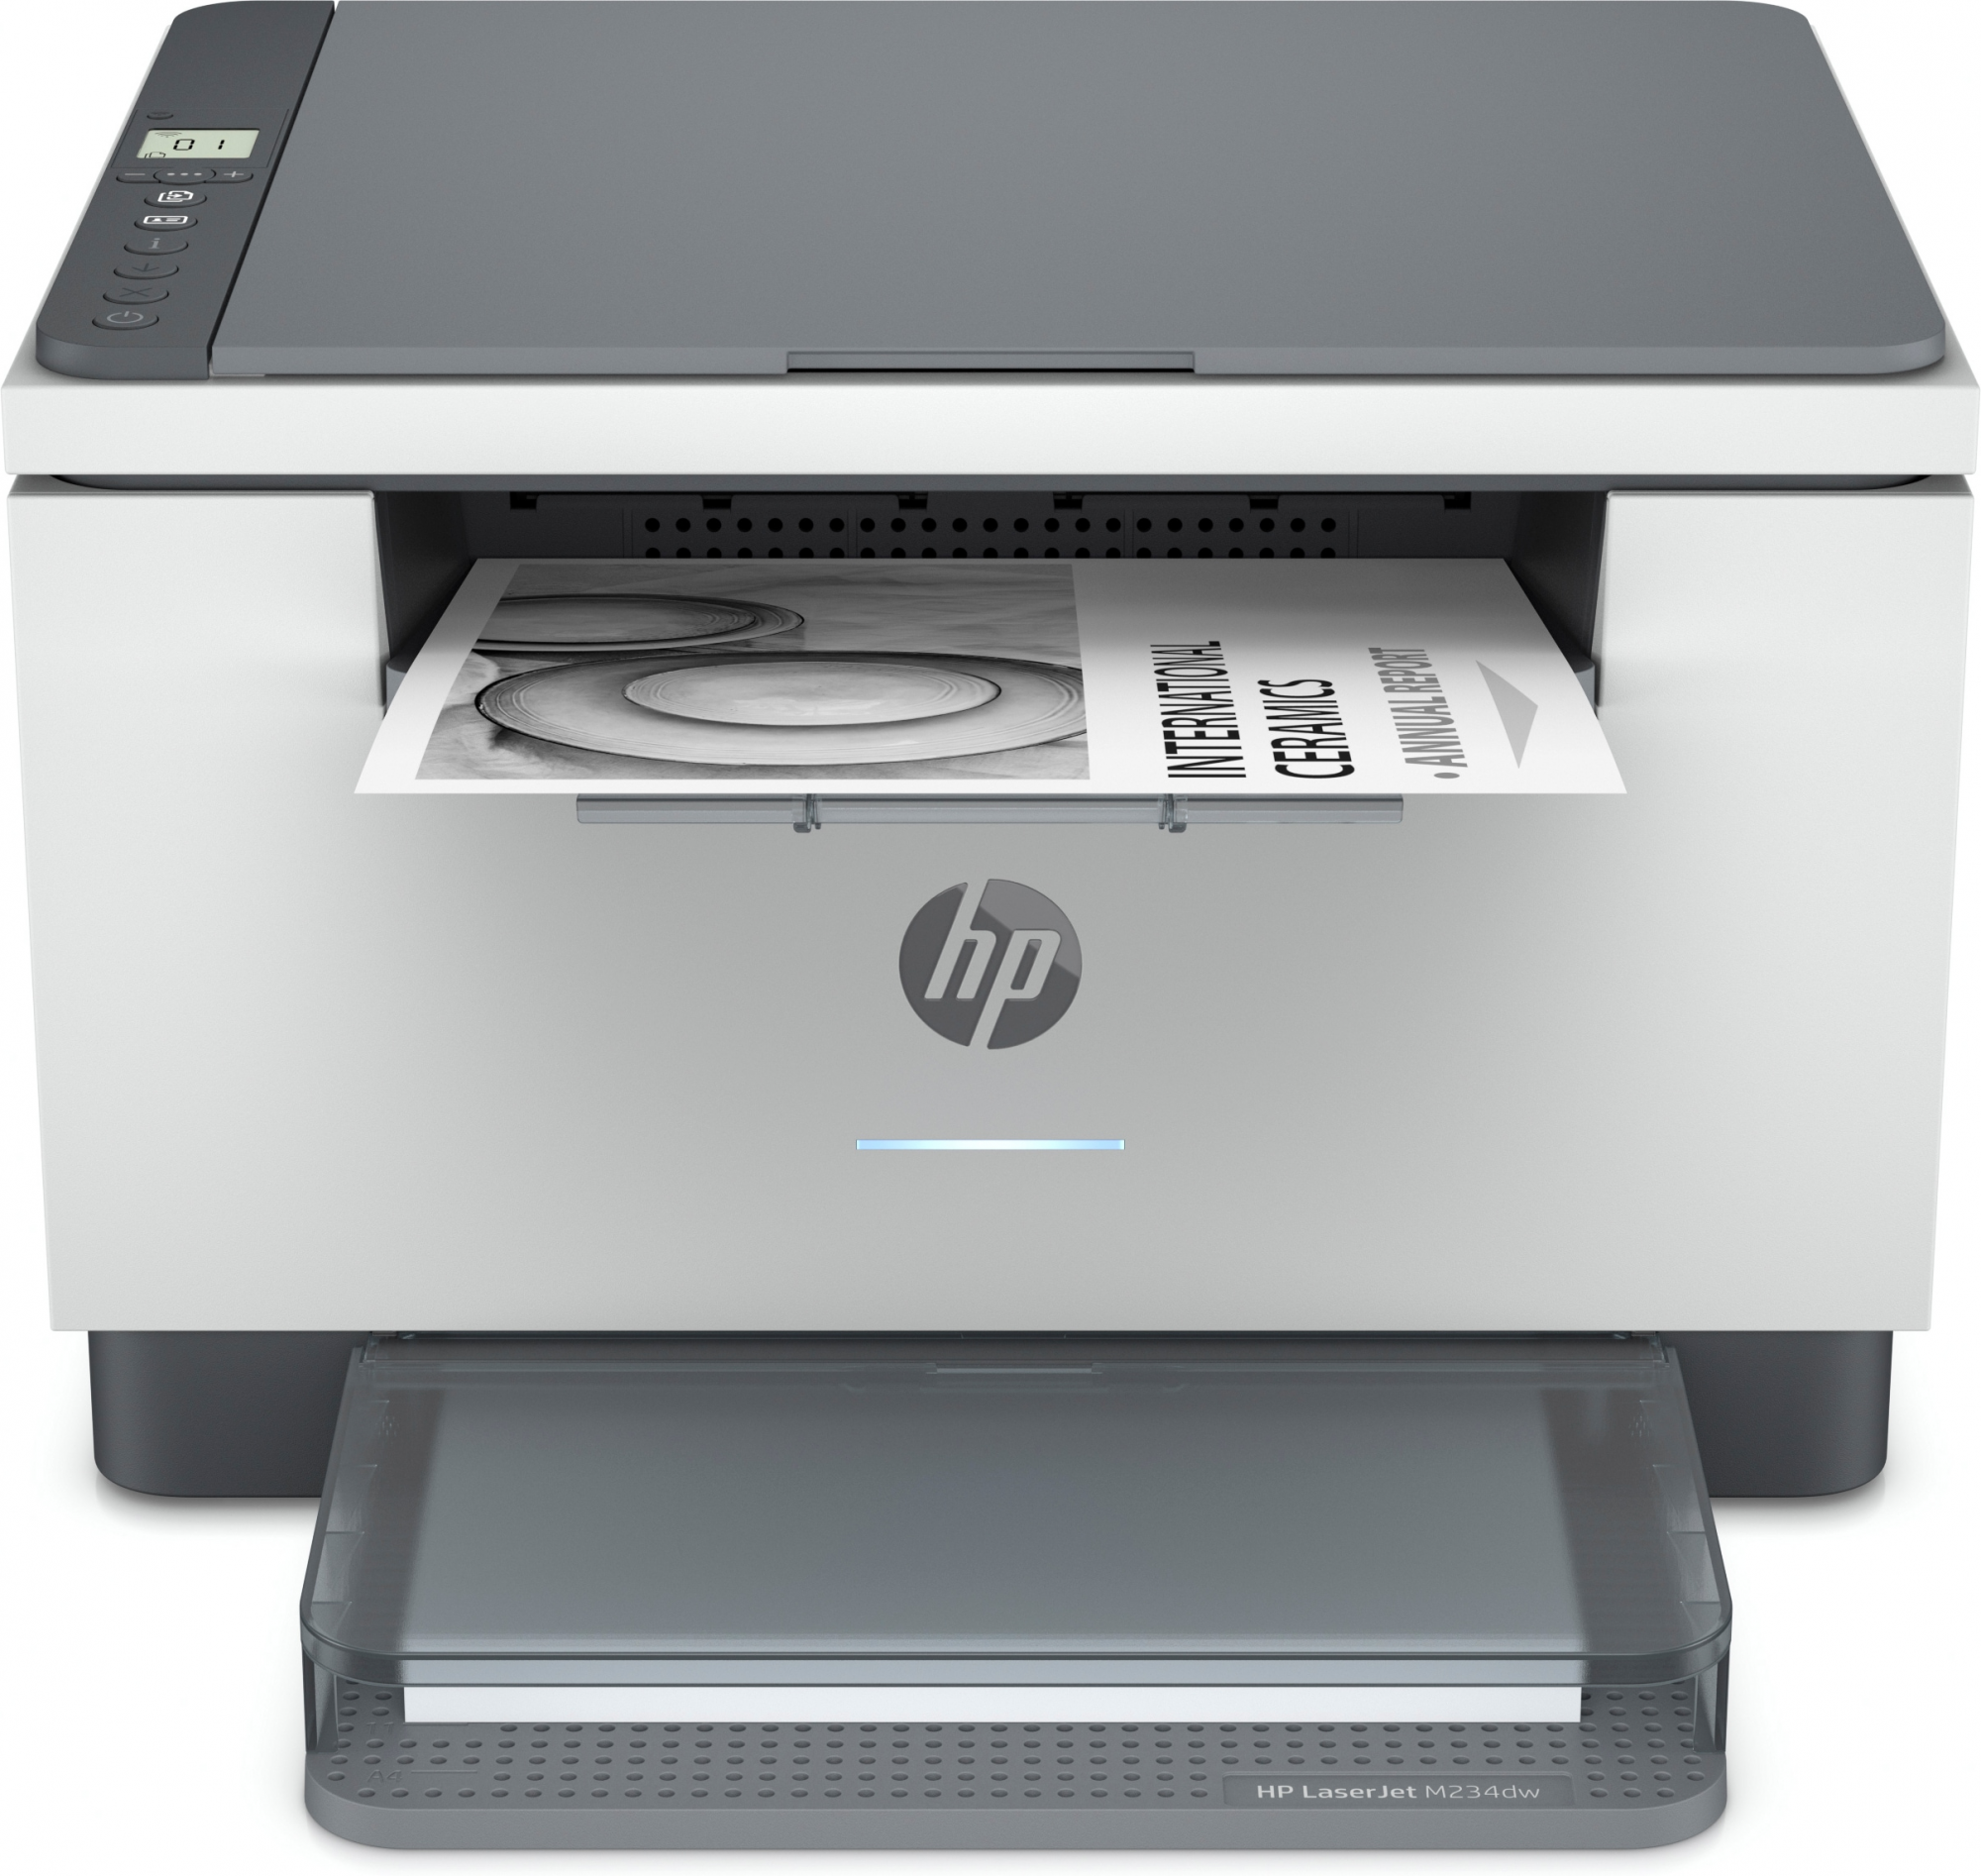 Image of HP LaserJet Stampante multifunzione M234dw, Bianco e nero, Stampante per Piccoli uffici, Stampa, copia, scansione, Scansione verso e-mail; scansione verso PDF